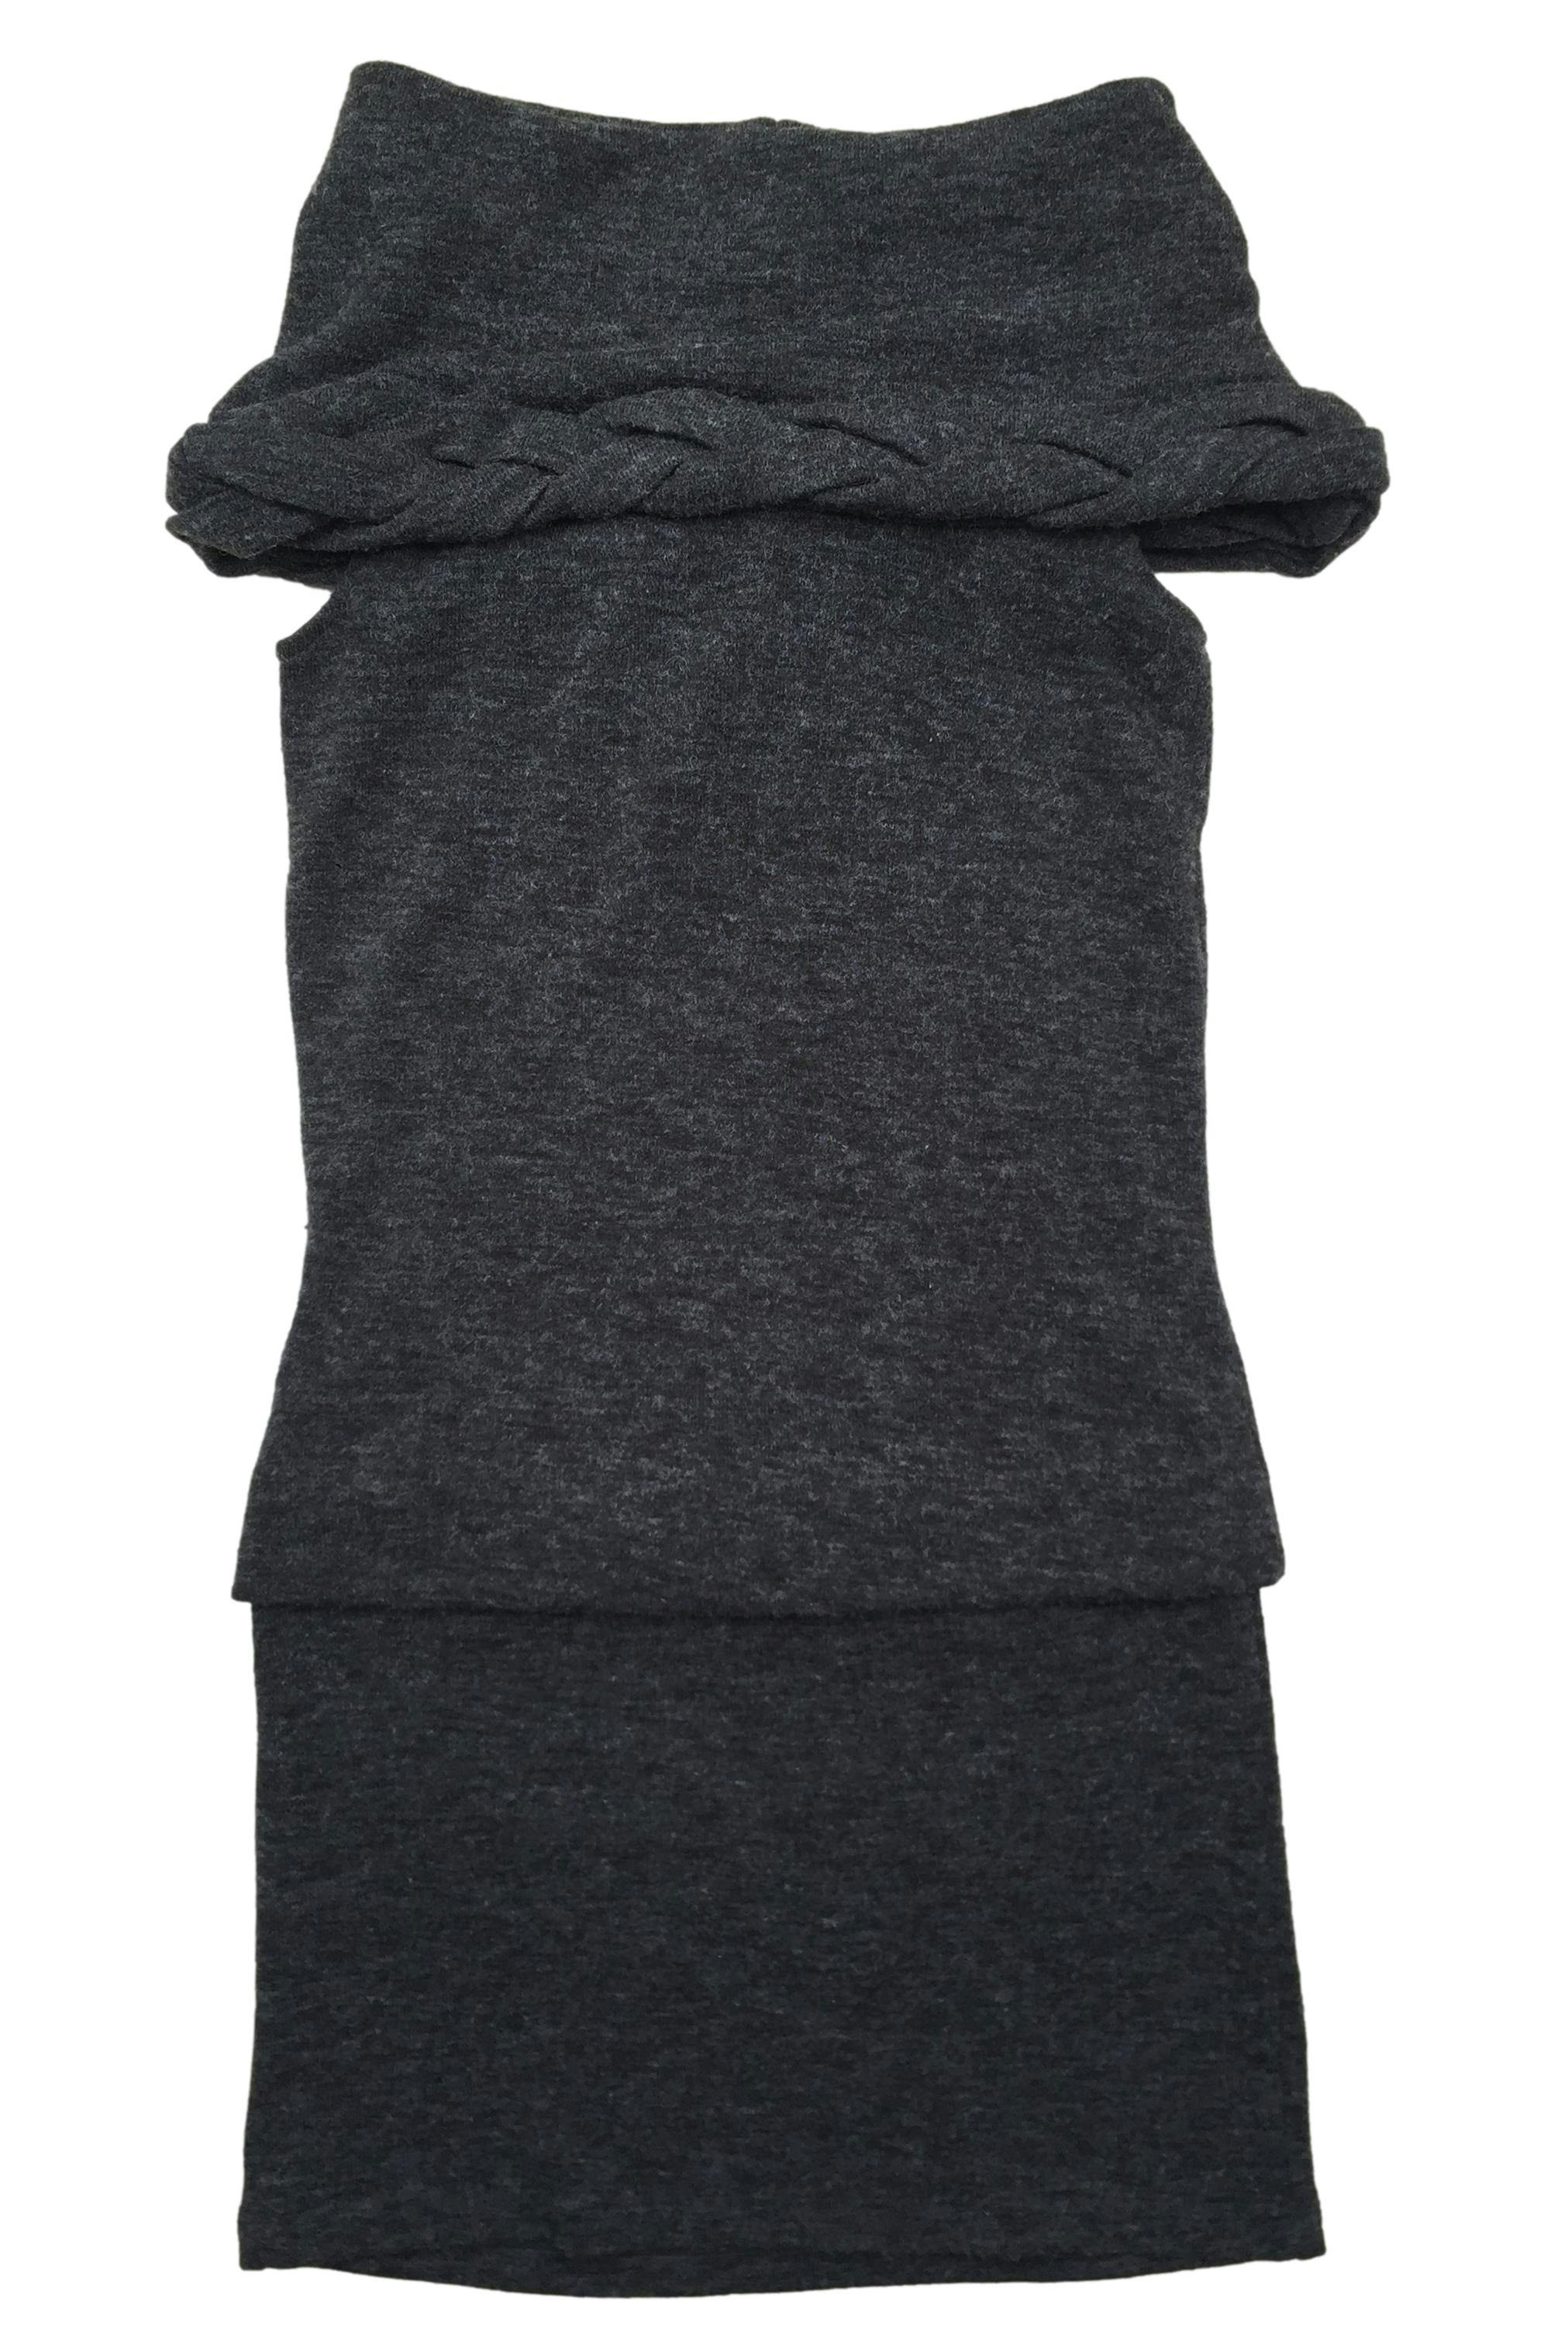 Vestido Moda & Cia gris, offshoulder, trenzado posterior, forro. Busto: 80cm, Largo: 80cm